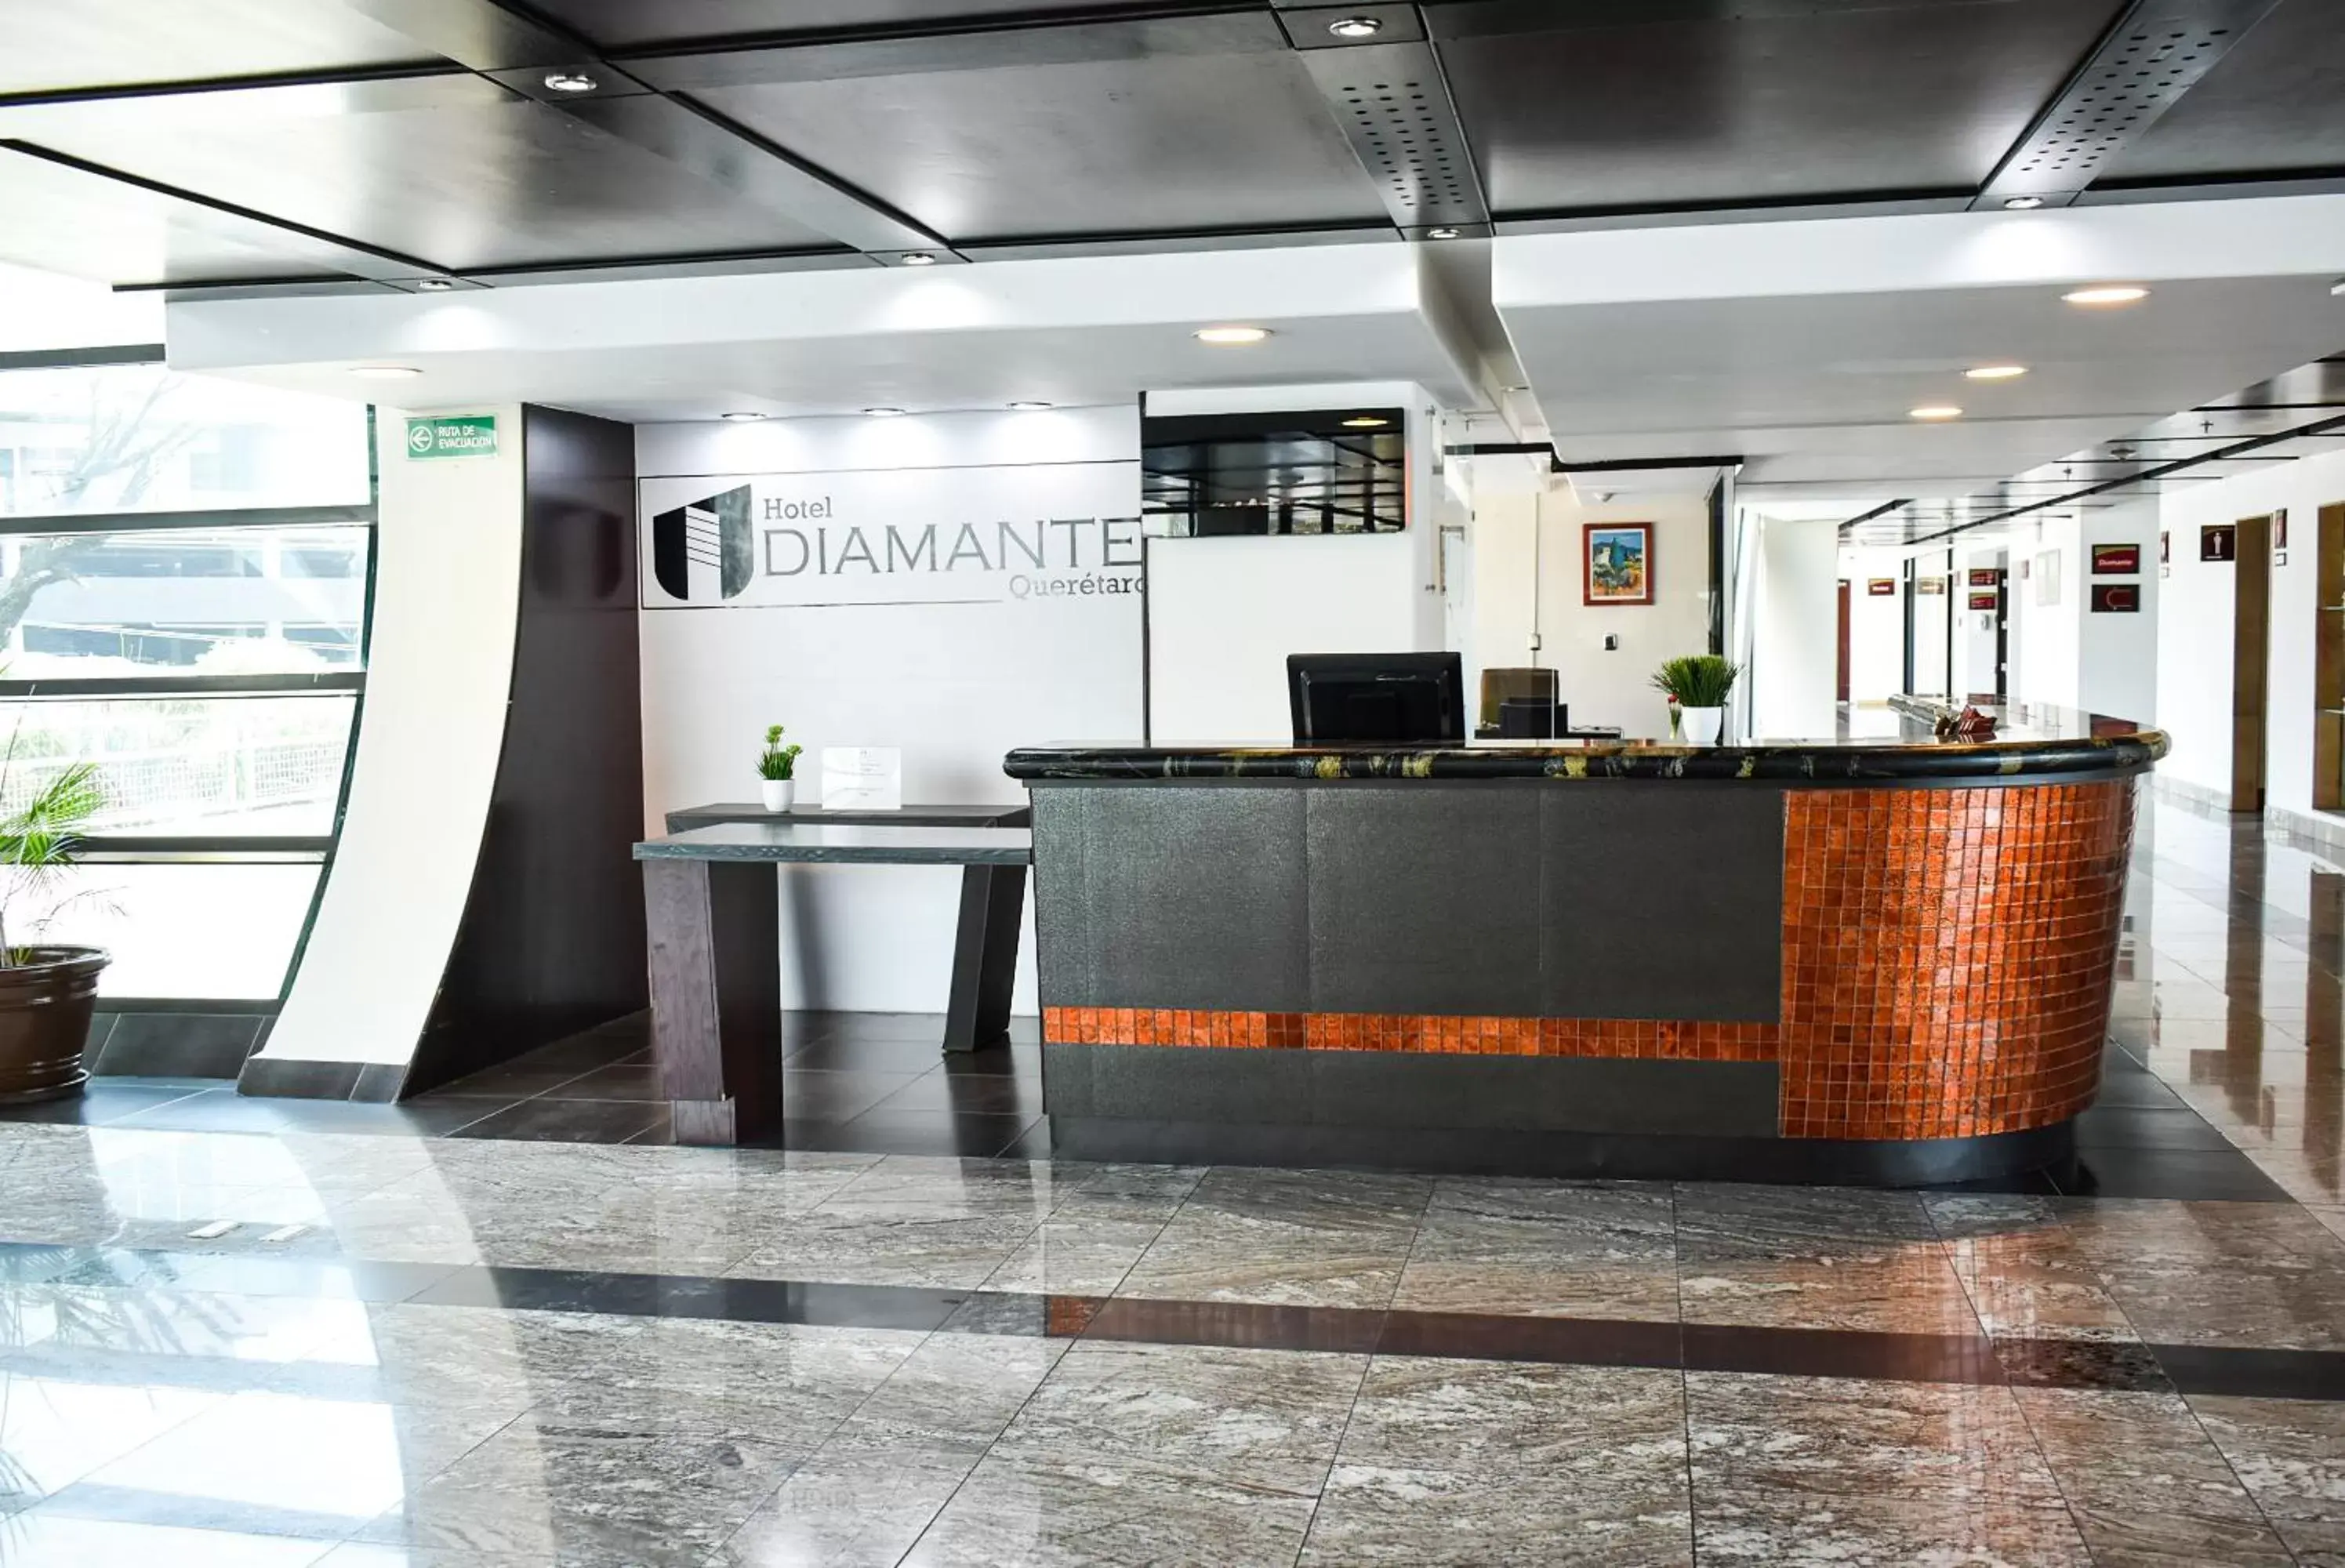 Lobby or reception, Lobby/Reception in Hotel Diamante Queretaro